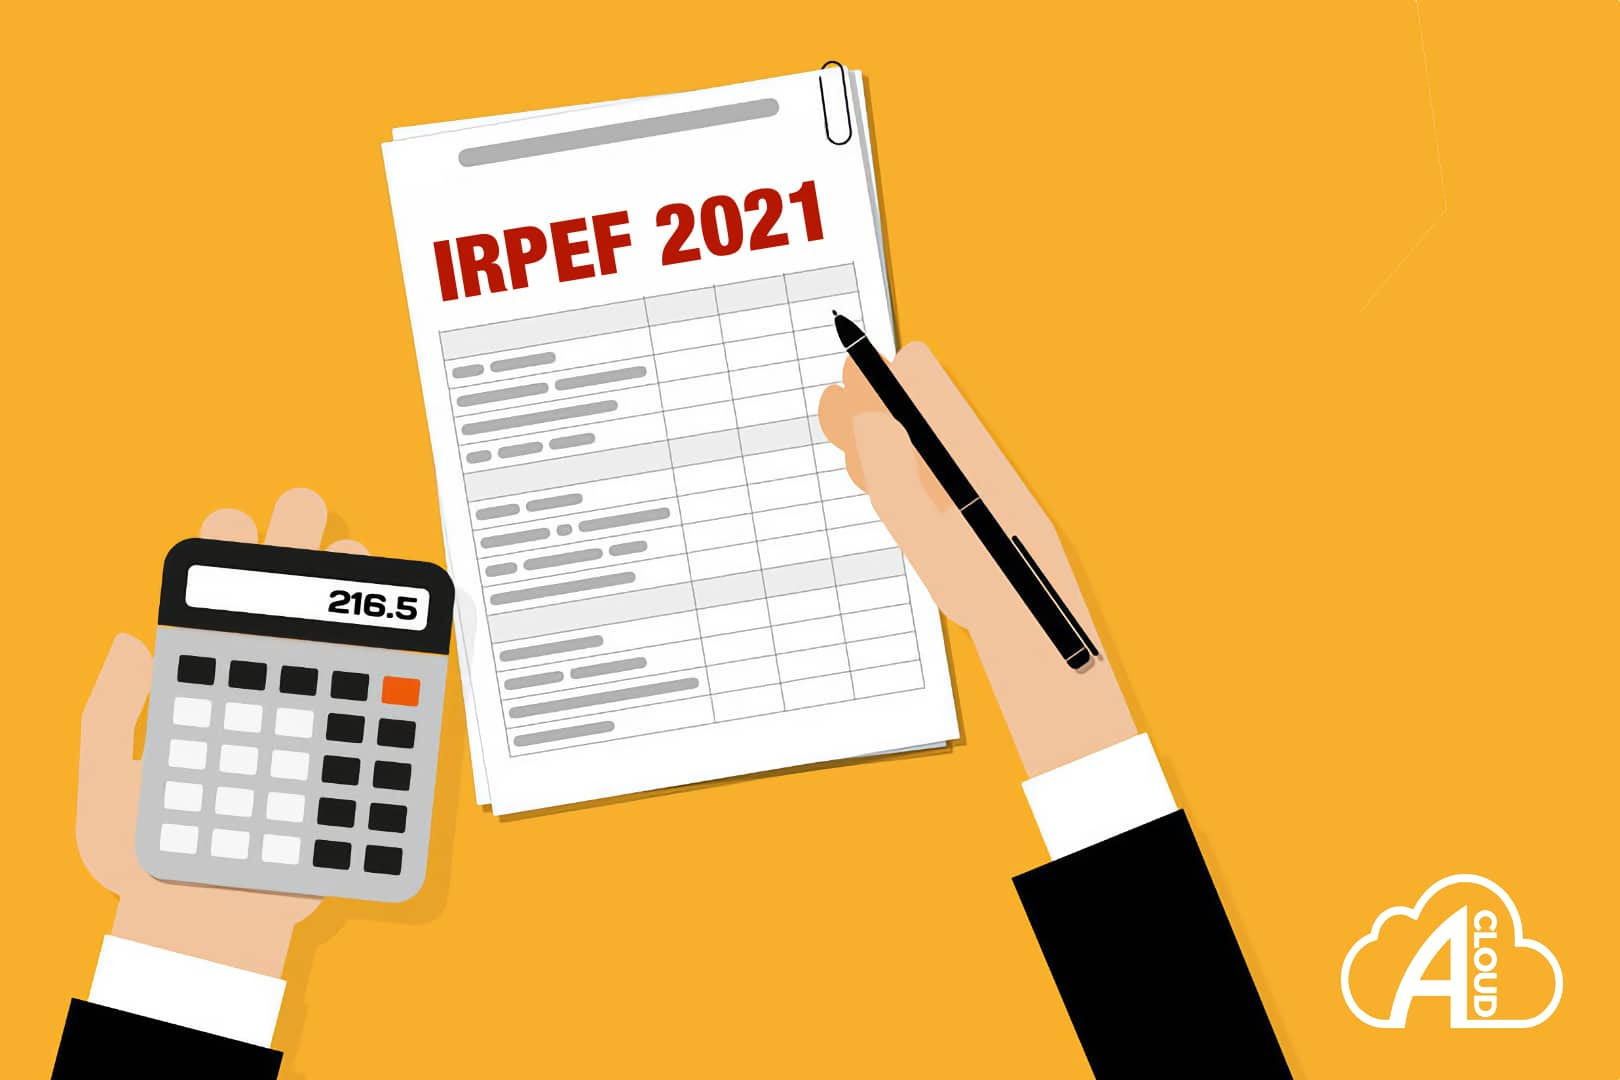 Calcolatore IRPEF 2021 - Applicazione gratuita